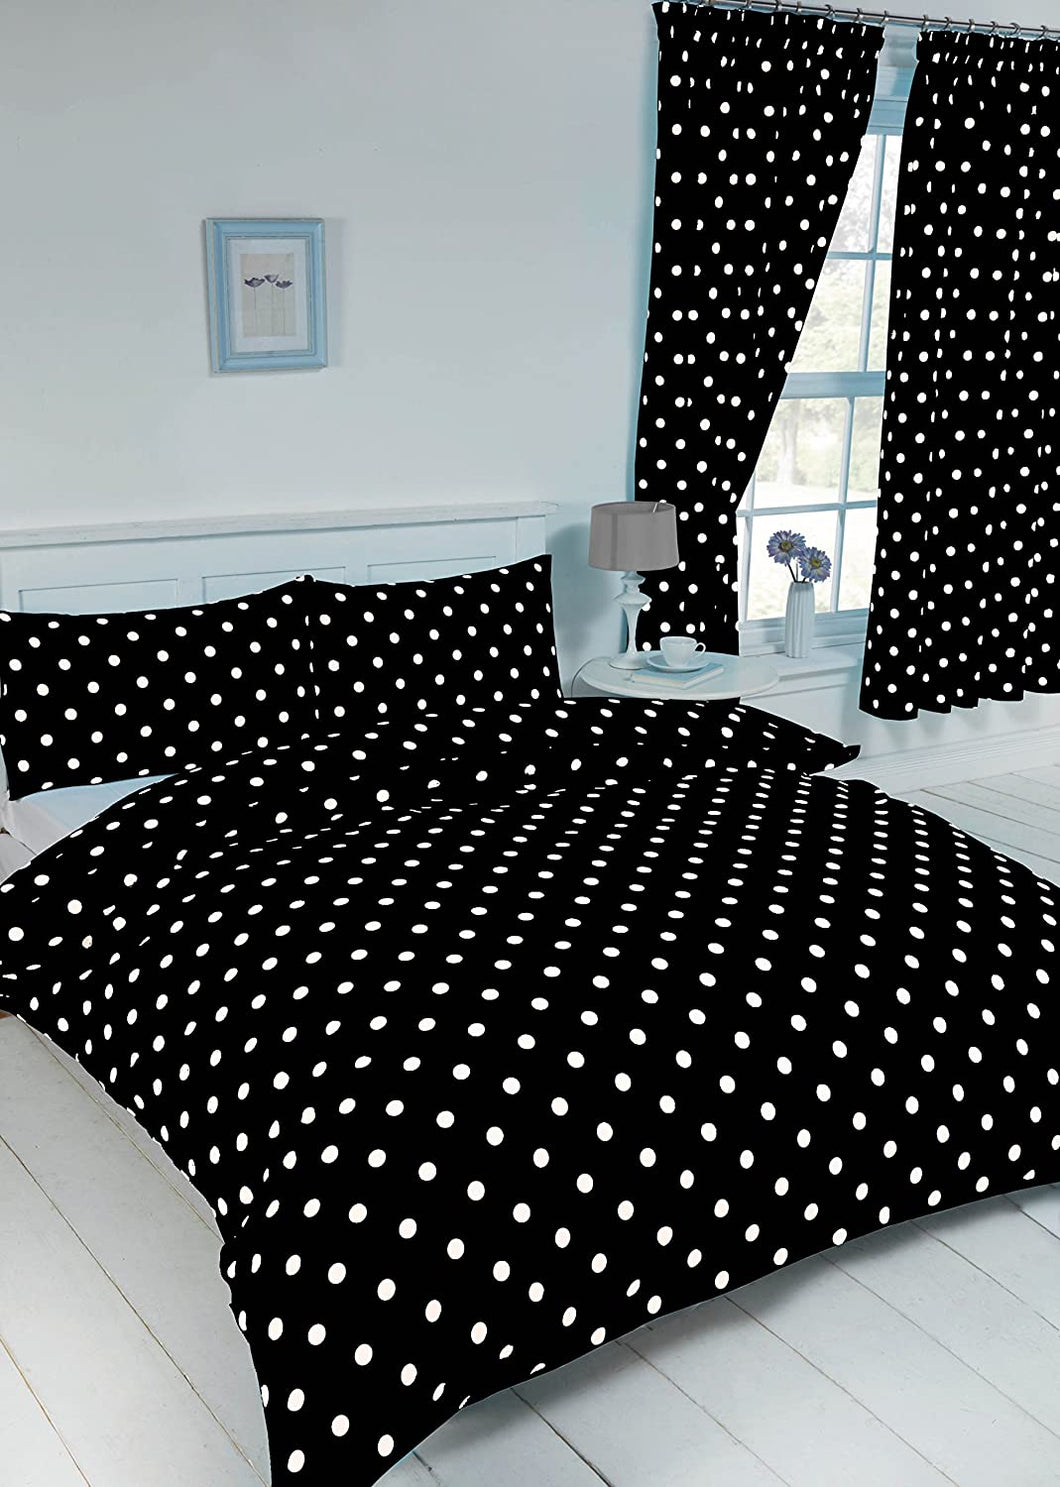 Double Bed Duvet Cover Set Polka Dot Black White